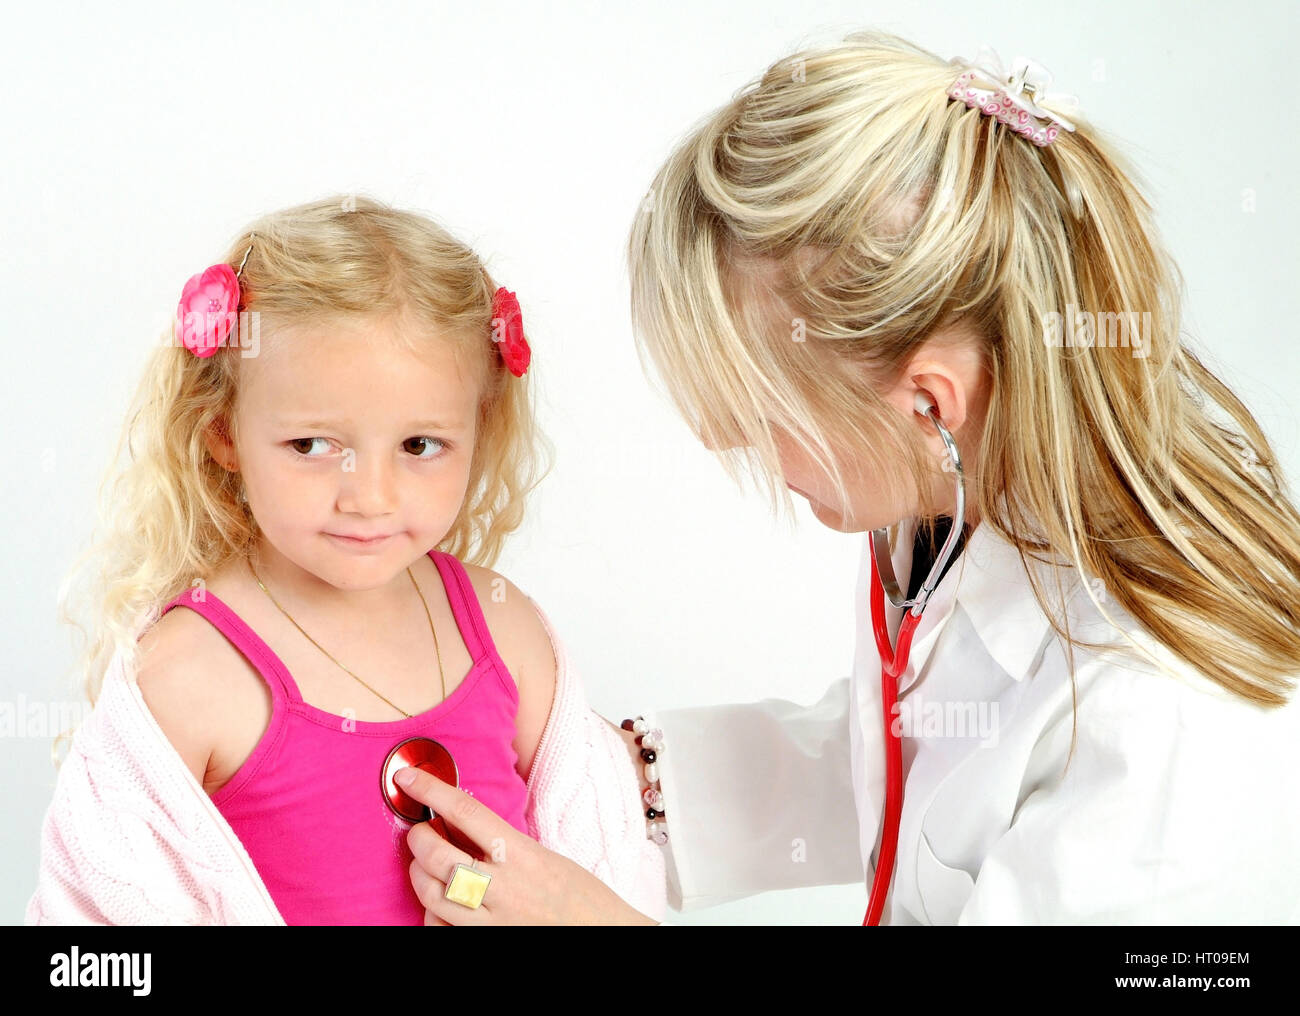 Kinderaerztin untersucht Maedchen mit Stethoskop - pediatrician Stock Photo